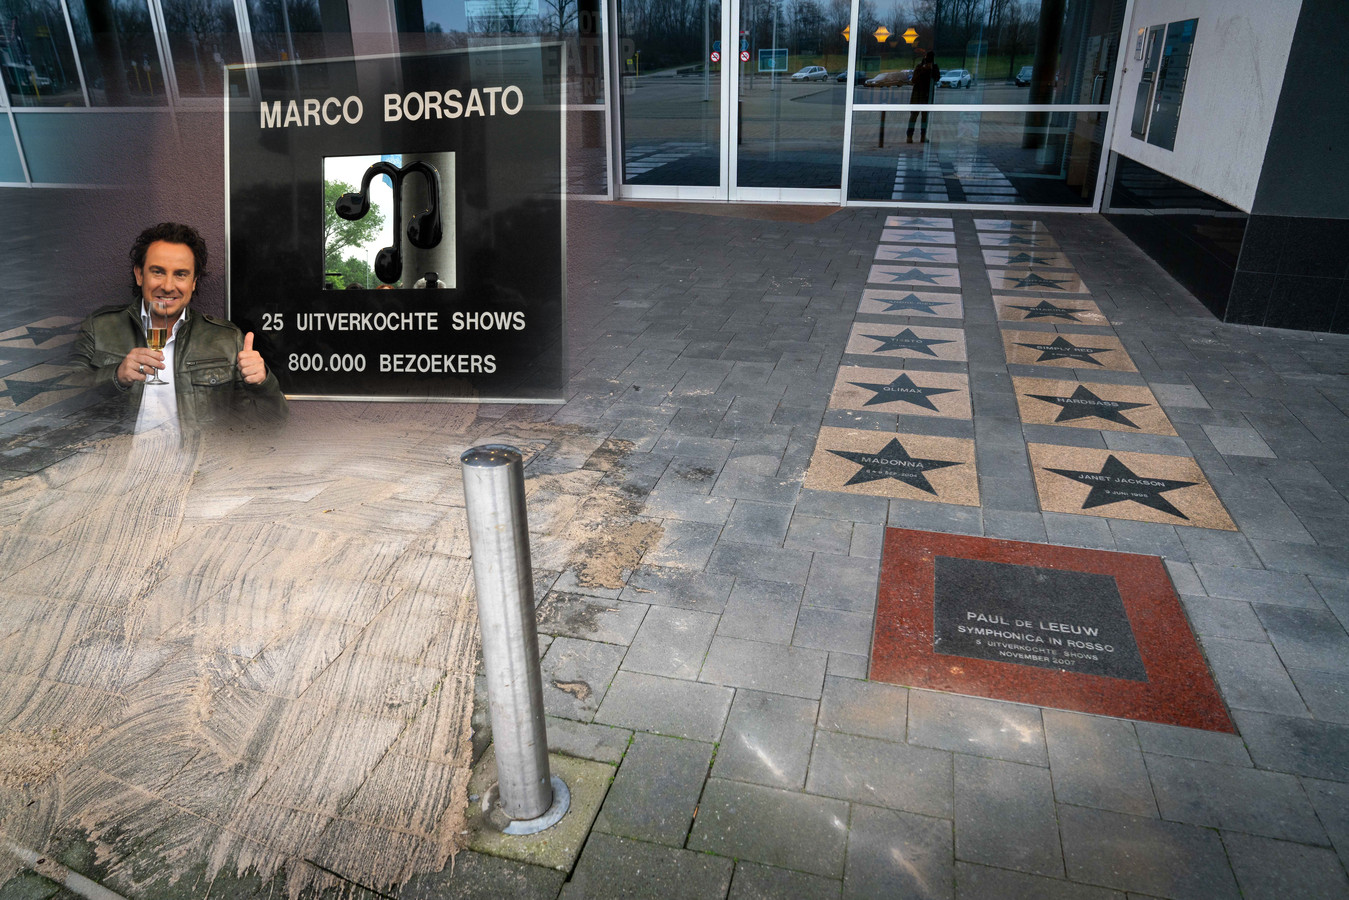 De herinneringen aan de grote successen die Marco Borsato vierde in GelreDome zijn weggehaald, vanwege de affaire rond seksueel grensoverschrijdend gedrag bij televisietalentenjacht ‘The Voice of Holland’.